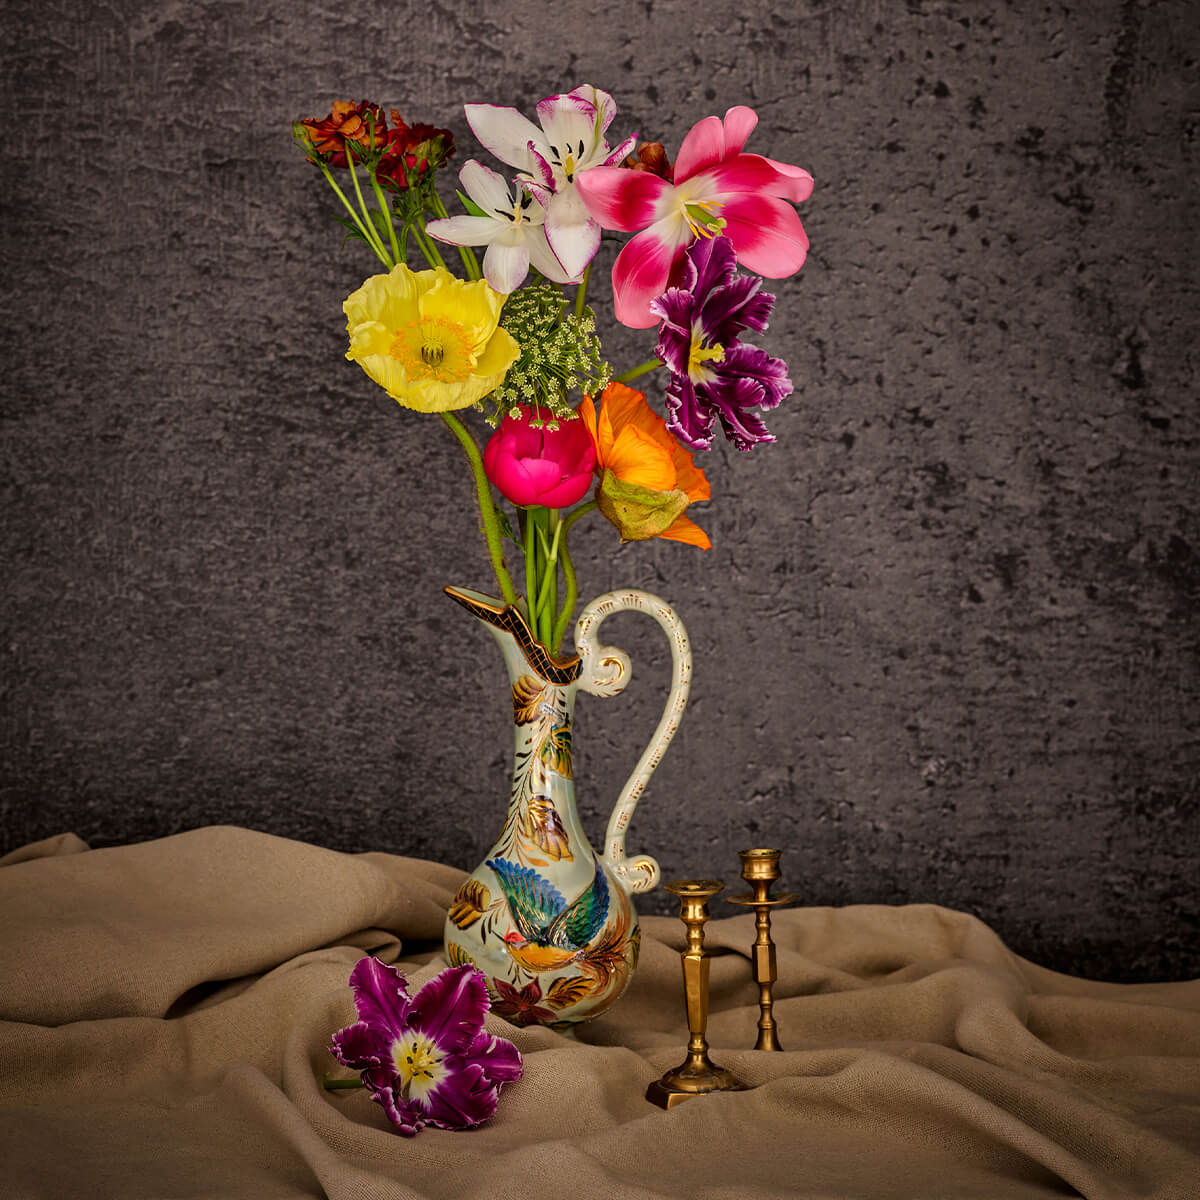 Flowers in classic vase